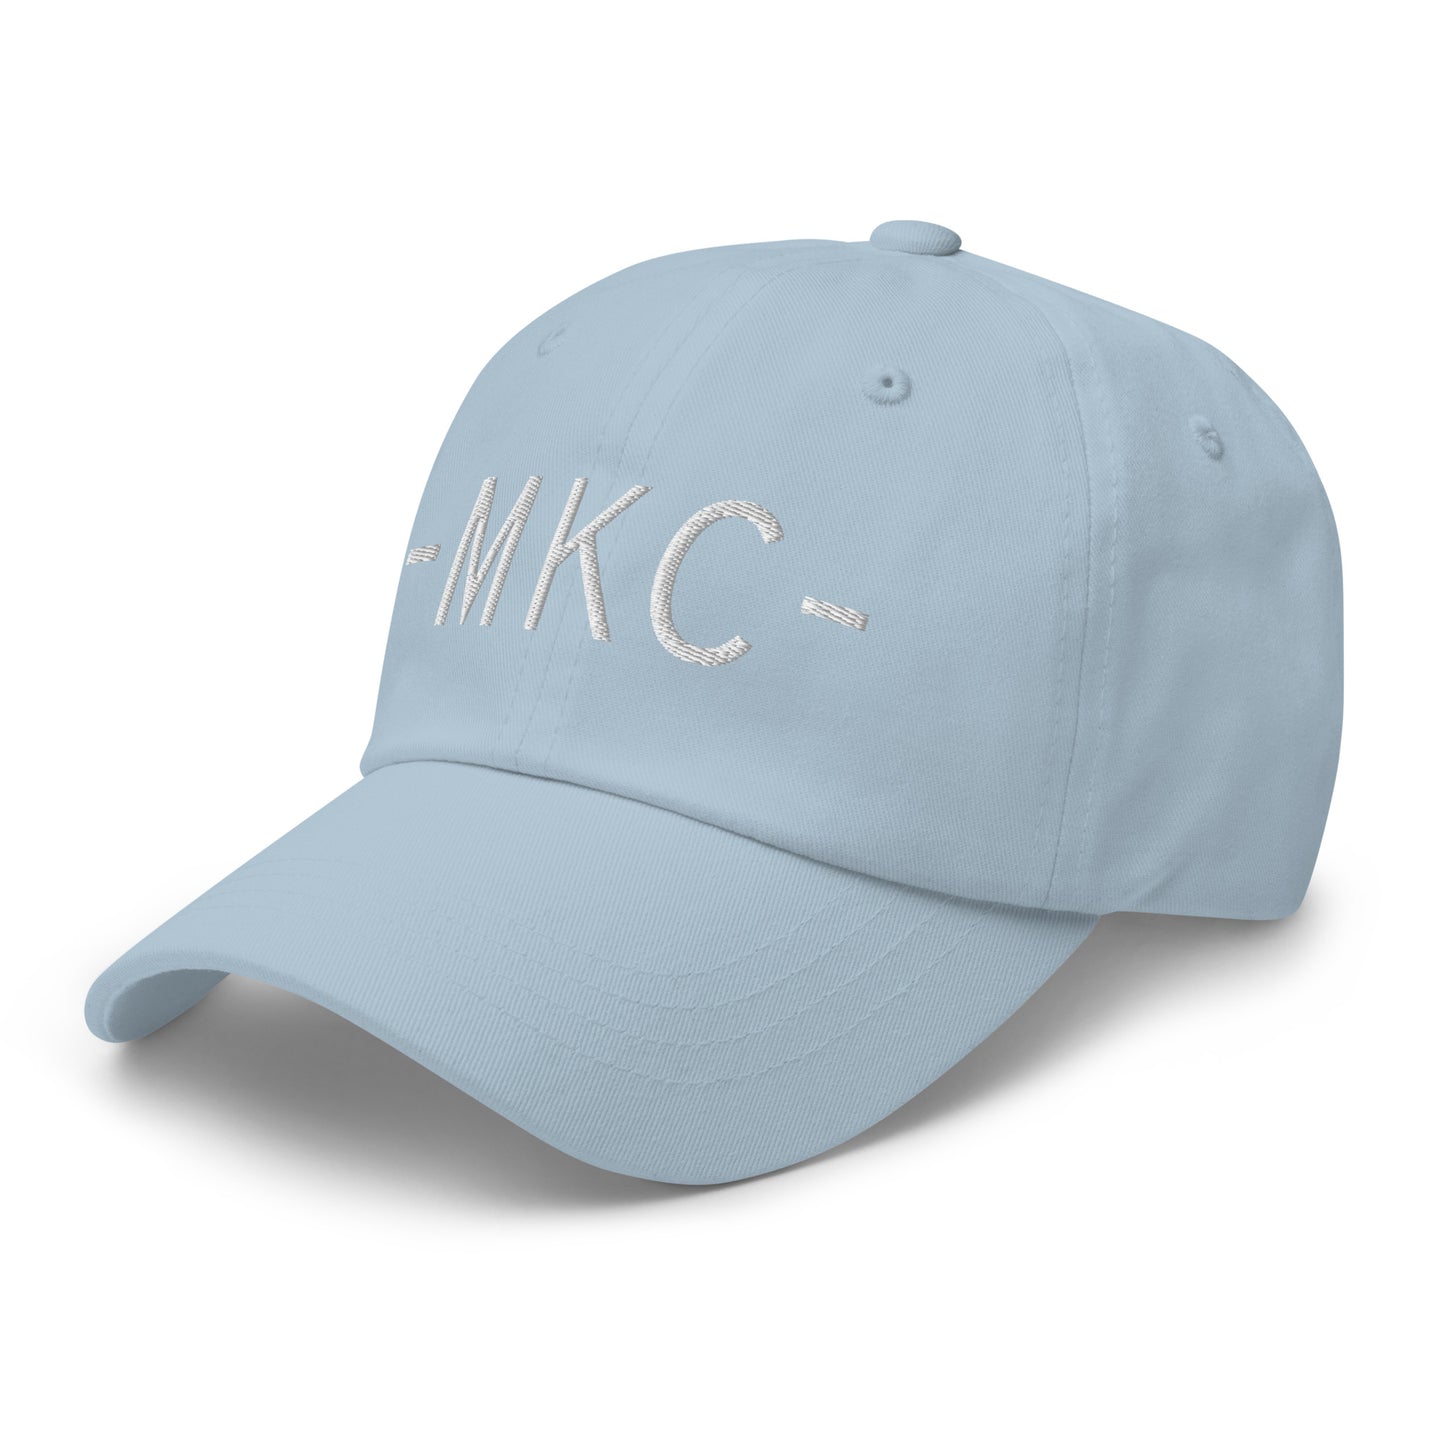 Souvenir Baseball Cap - White • MKC Kansas City • YHM Designs - Image 28